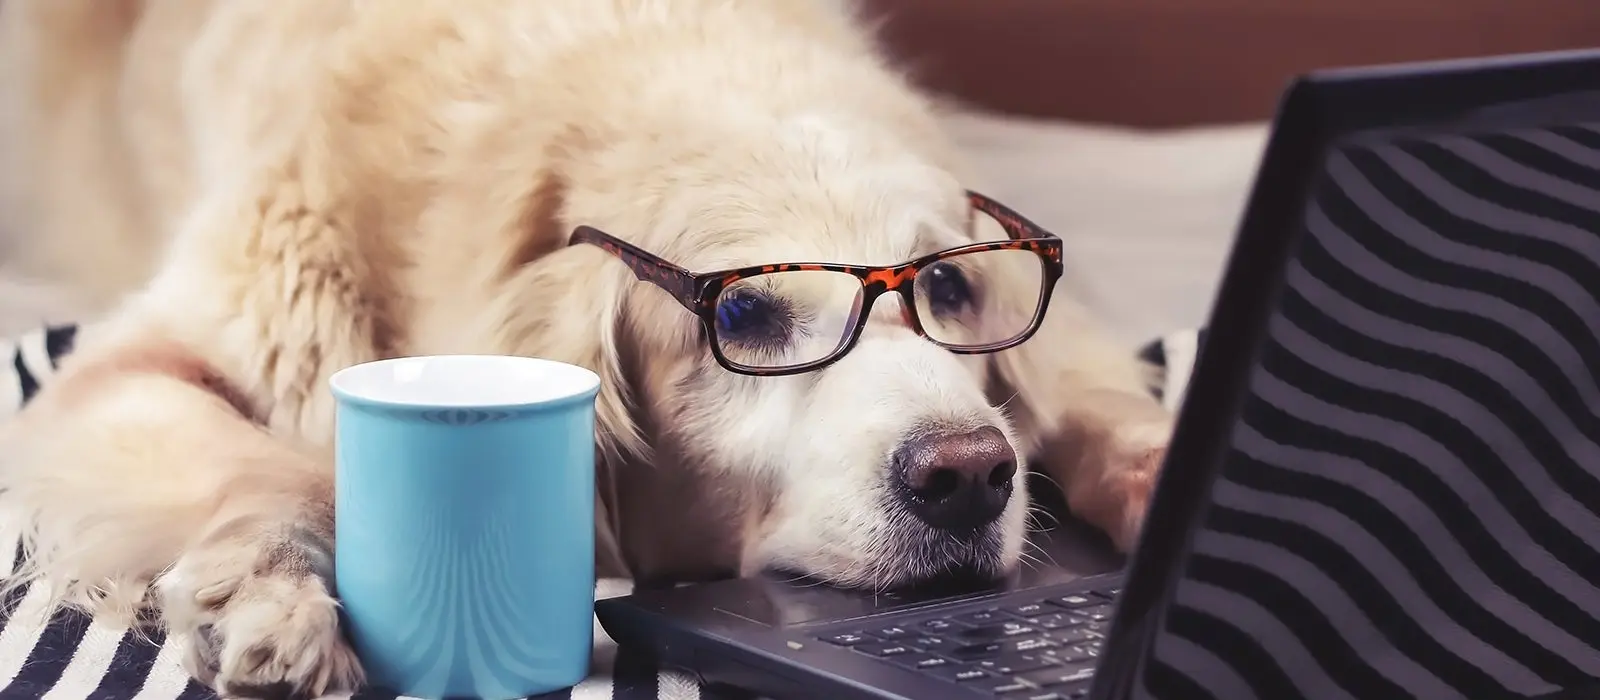 Perro Golden Retriever con lentes frente a un computador portatil con un vaso de cafe en una de sus patas